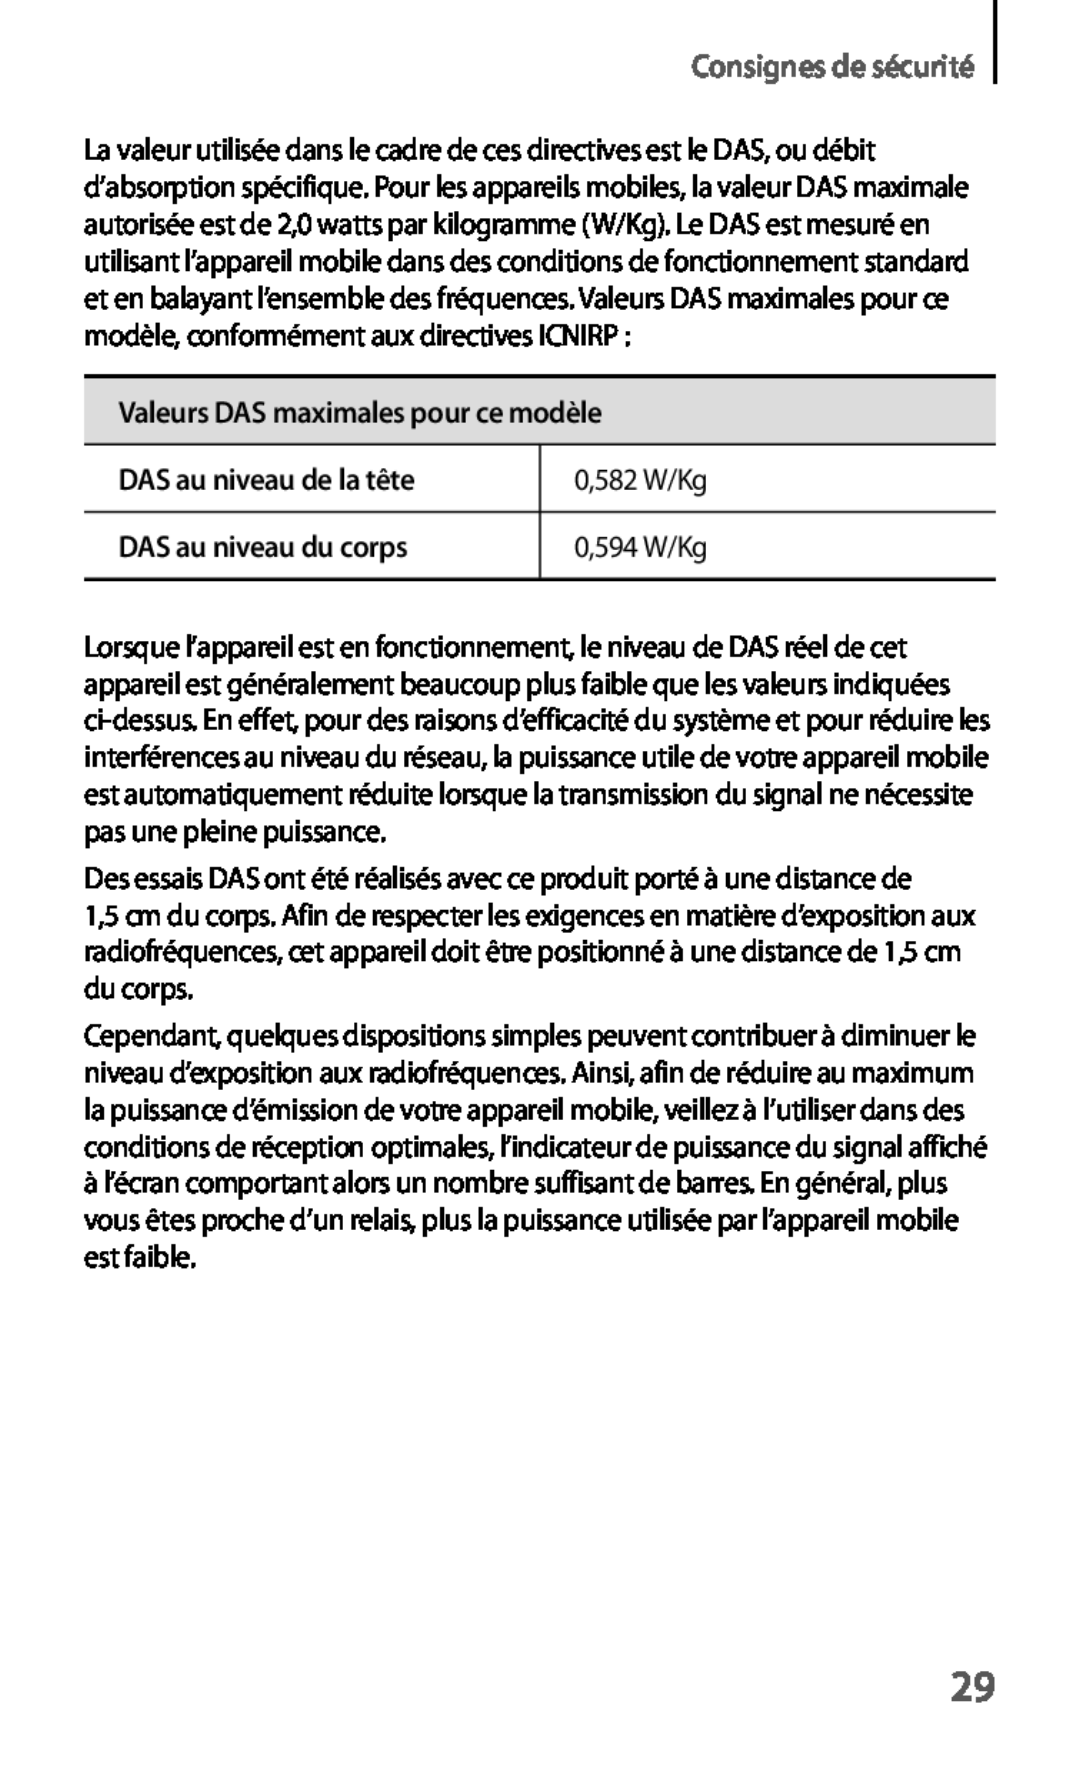 Samsung GT-S7275HKNFTM Consignes de sécurité, Valeurs DAS maximales pour ce modèle, DAS au niveau de la tête, 0,582 W/Kg 